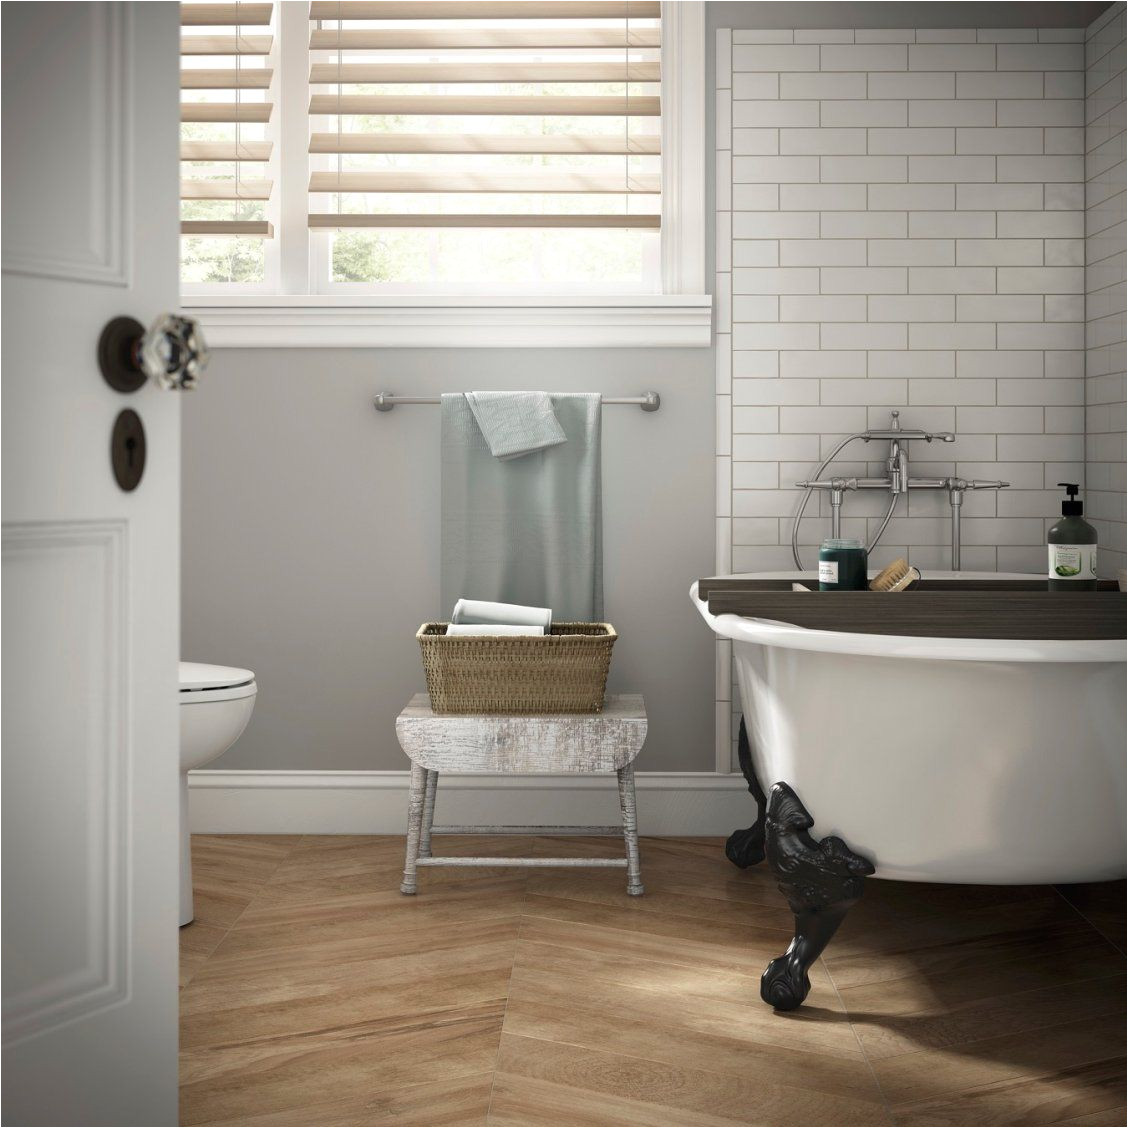 Clawfoot Tub Bathroom Ideas Create A Spa Like Bathroom with soft Gray Walls A Clawfoot Tub